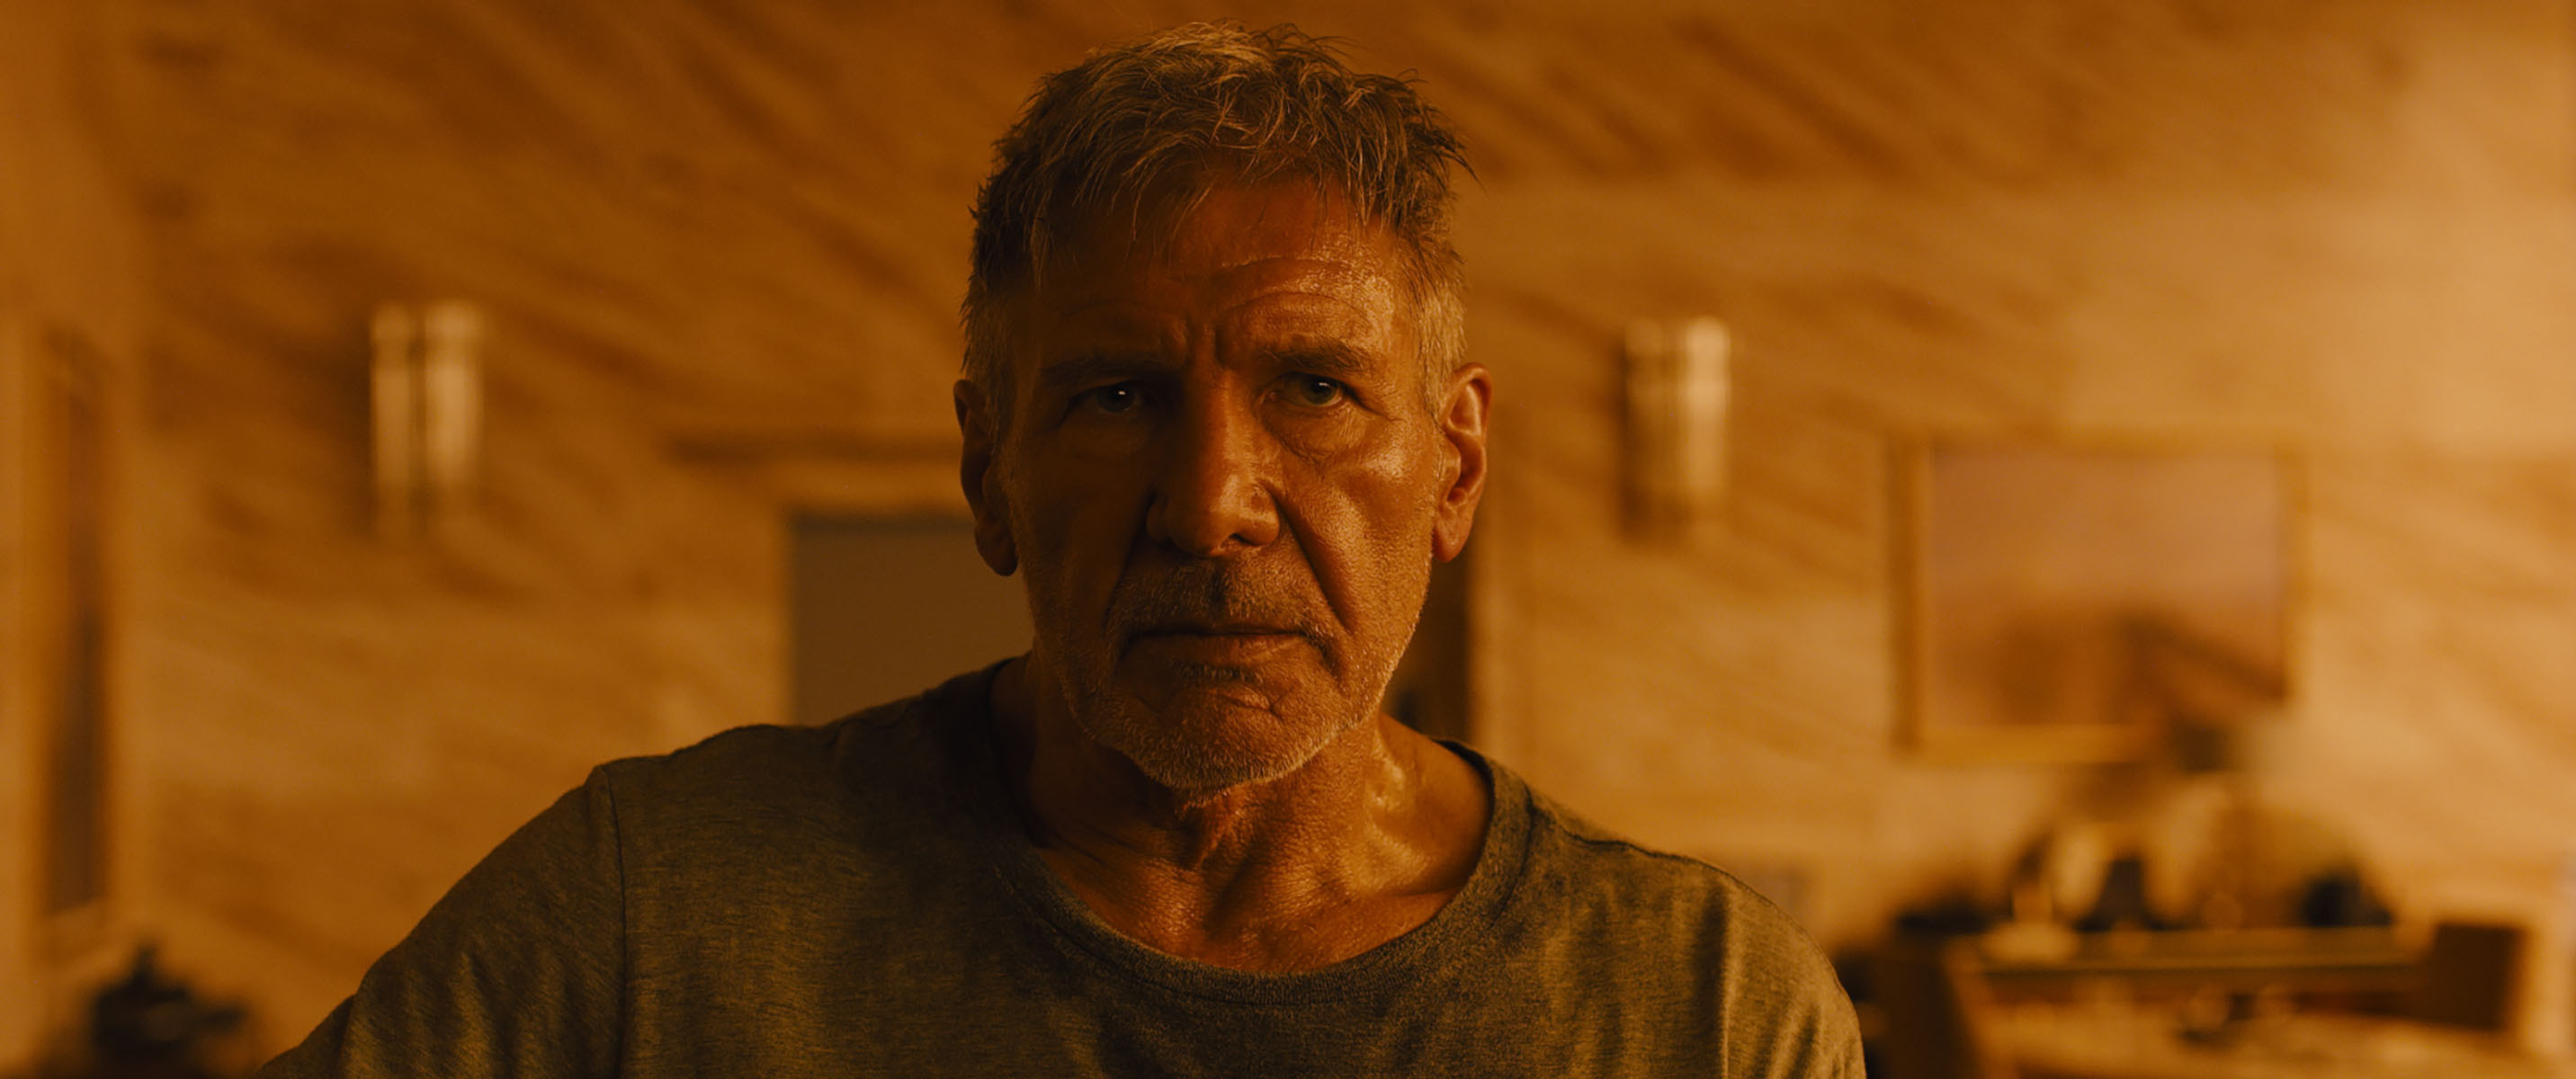 Rick Deckard, Blade Runner, Movie character, A1 blog post, 2870x1200 Dual Screen Desktop